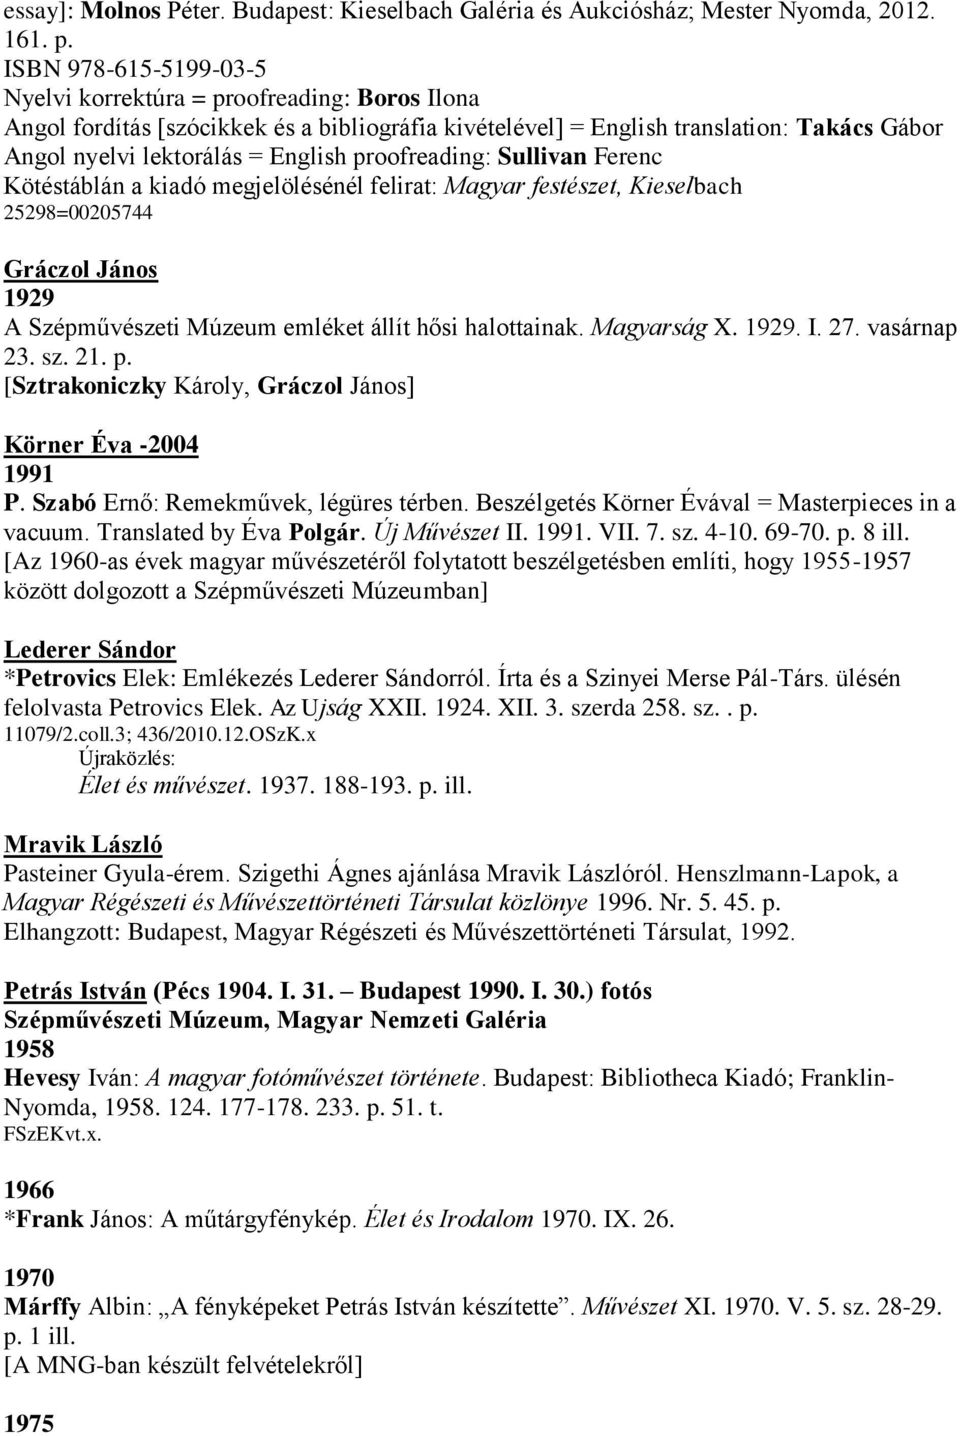 Translated by Éva Polgár. Új Művészet II. 1991. VII. 7. sz. 4-10. 69-70. p. 8 ill.